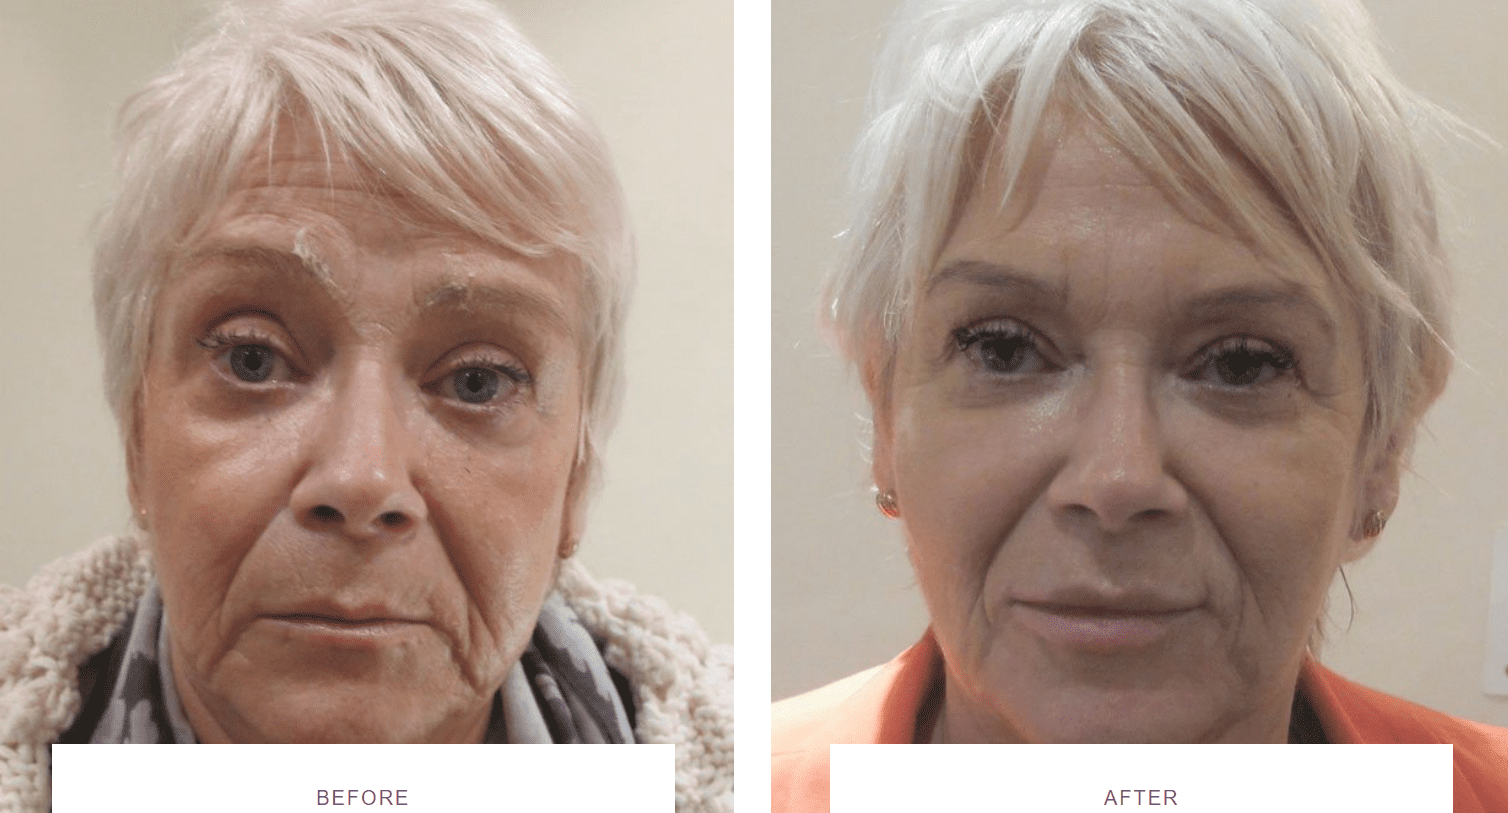 facial rejuvenation with dermal fillers